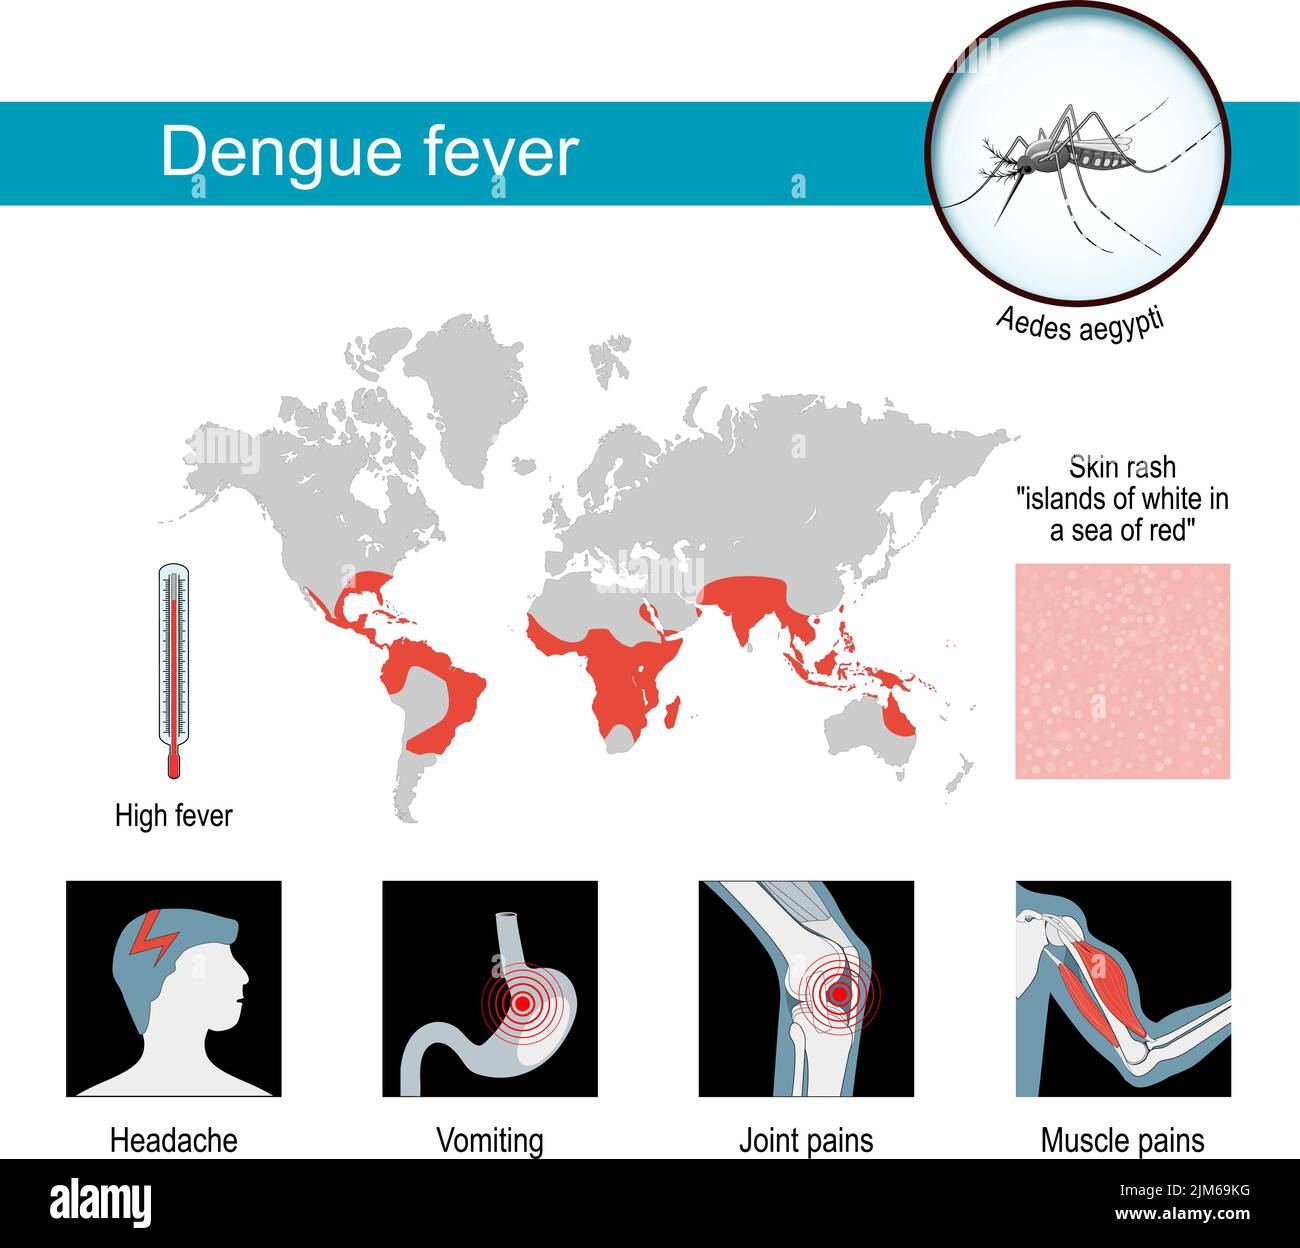 Sintomi di febbre dengue. Poster di infografia e consapevolezza. Mappe di dengue epidemica. Primo piano di Aedes aegypti - zanzara che diffonde la malattia. Vettore Illustrazione Vettoriale